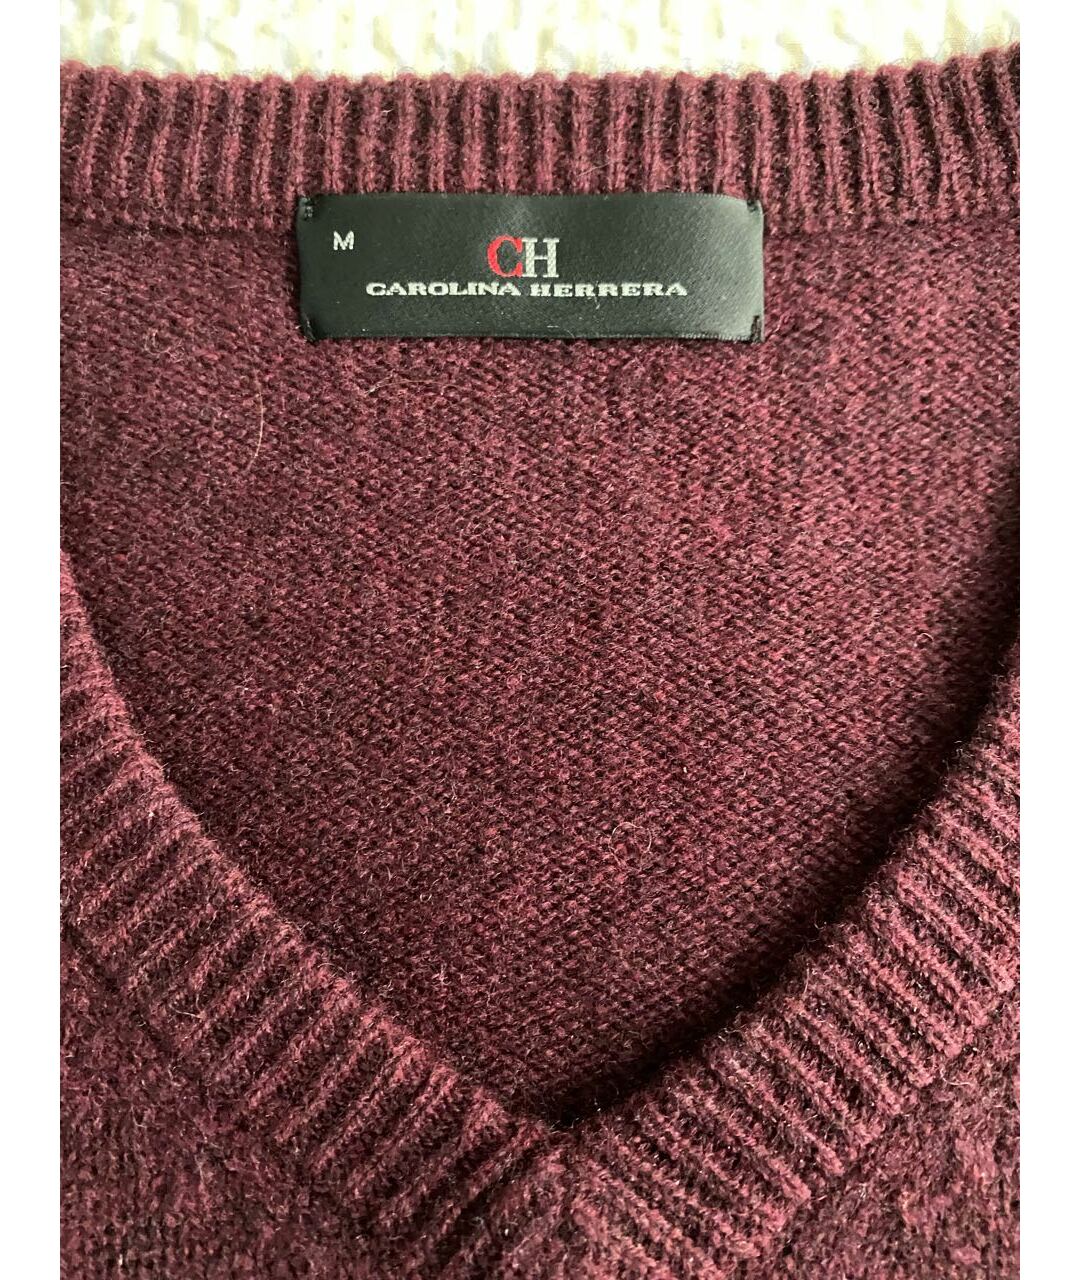 CH CAROLINA HERRERA Бордовый шерстяной джемпер / свитер, фото 2